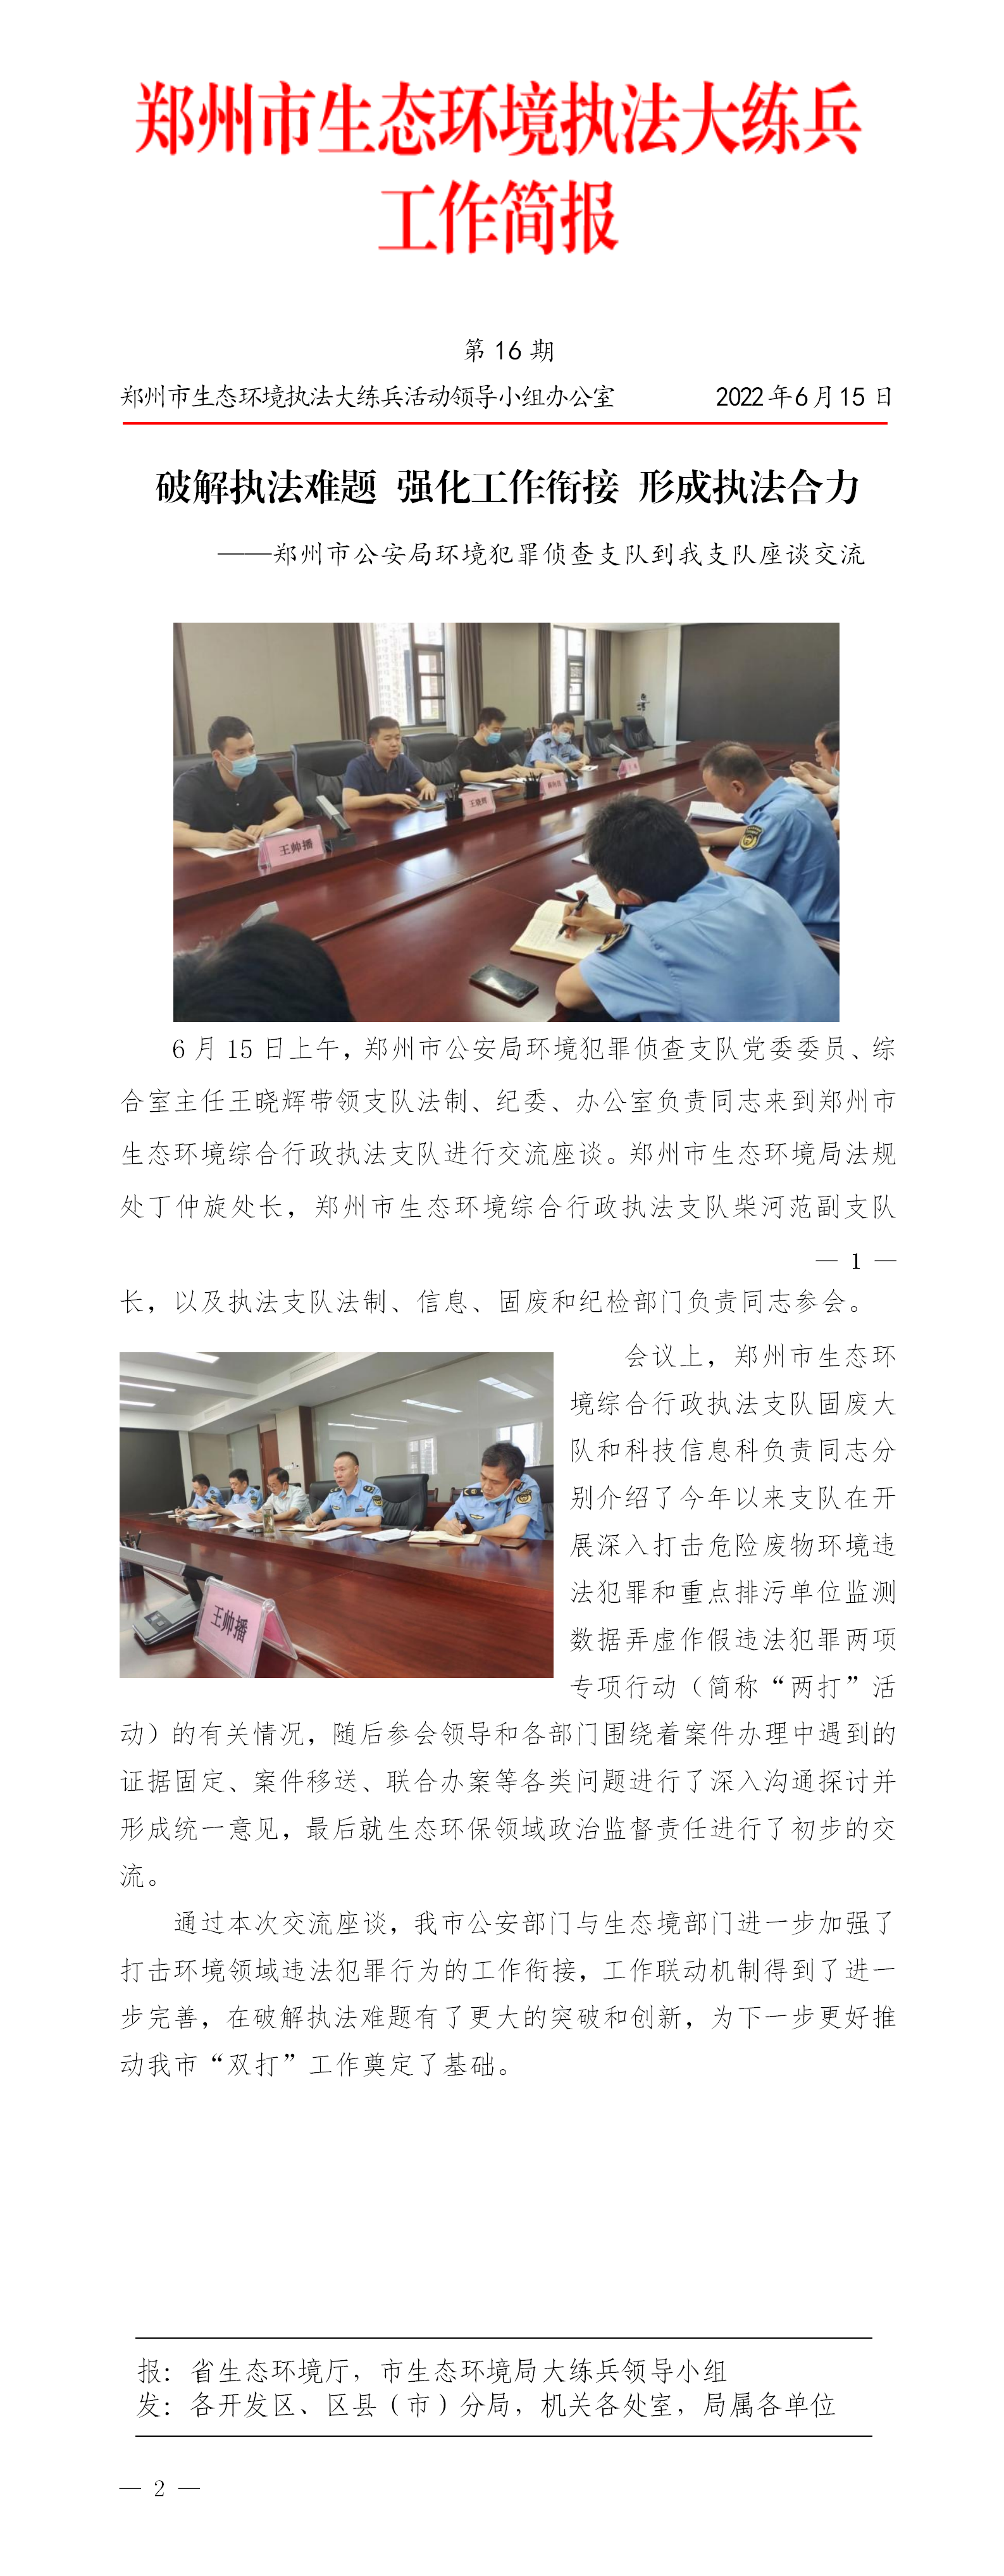 第16期 郑州市简报 破解执法难题 强化工作衔接 形成执法合力_01.png